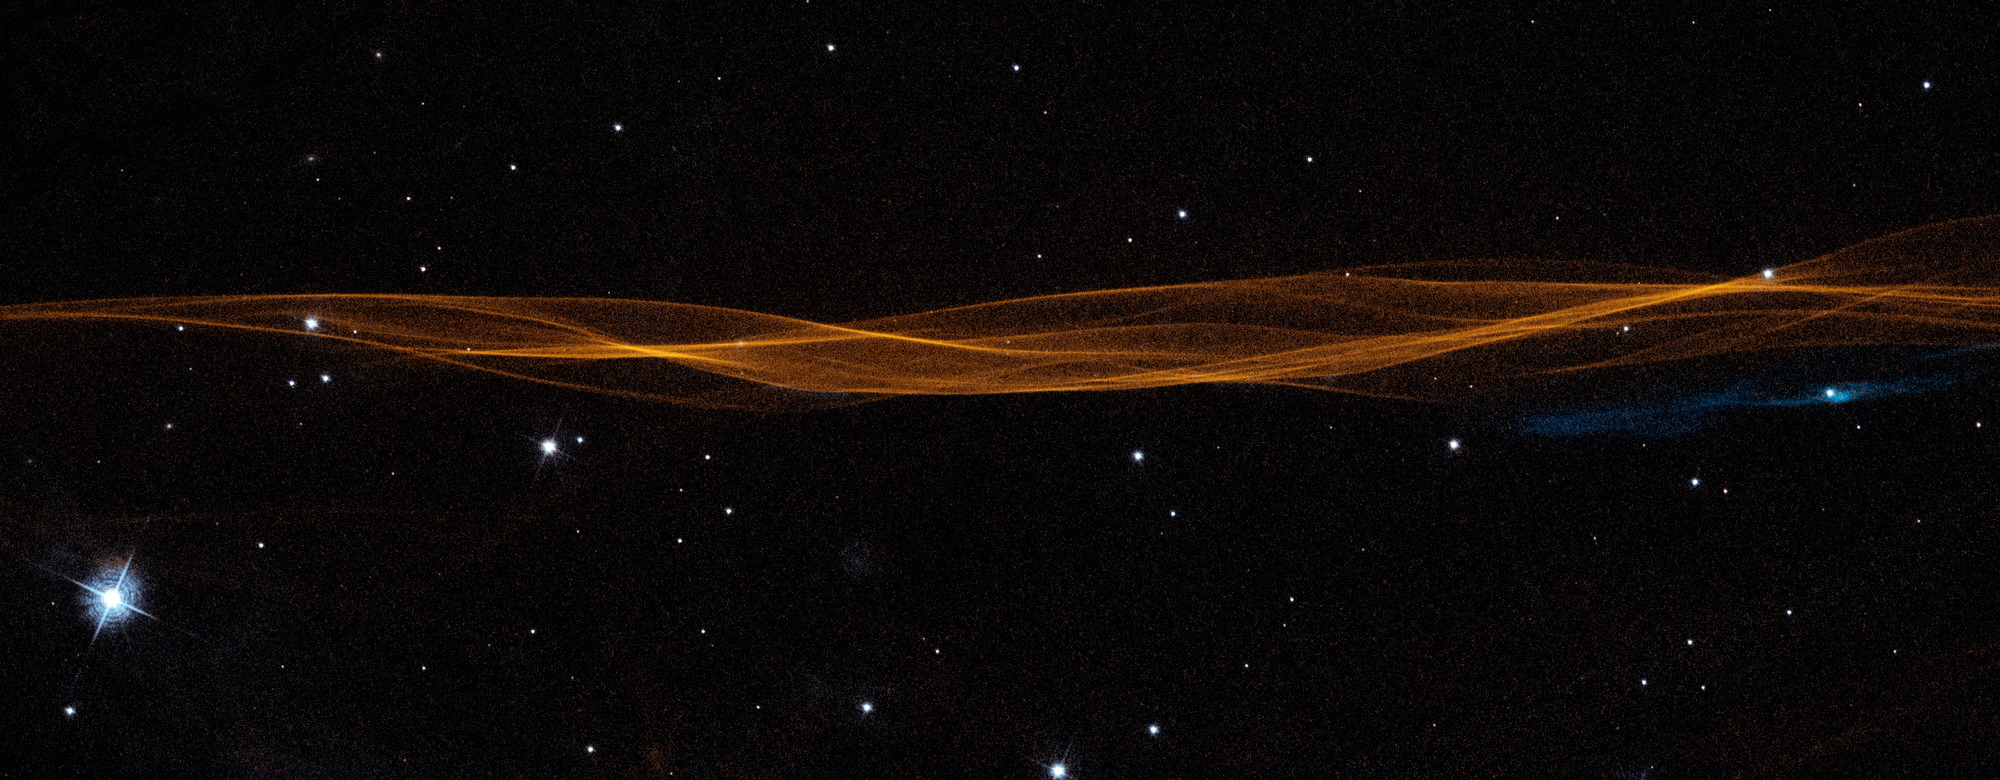 Астрономы десятилетиями наблюдали за расширением облака обломков сверхновой с помощью телескопа Хаббл.